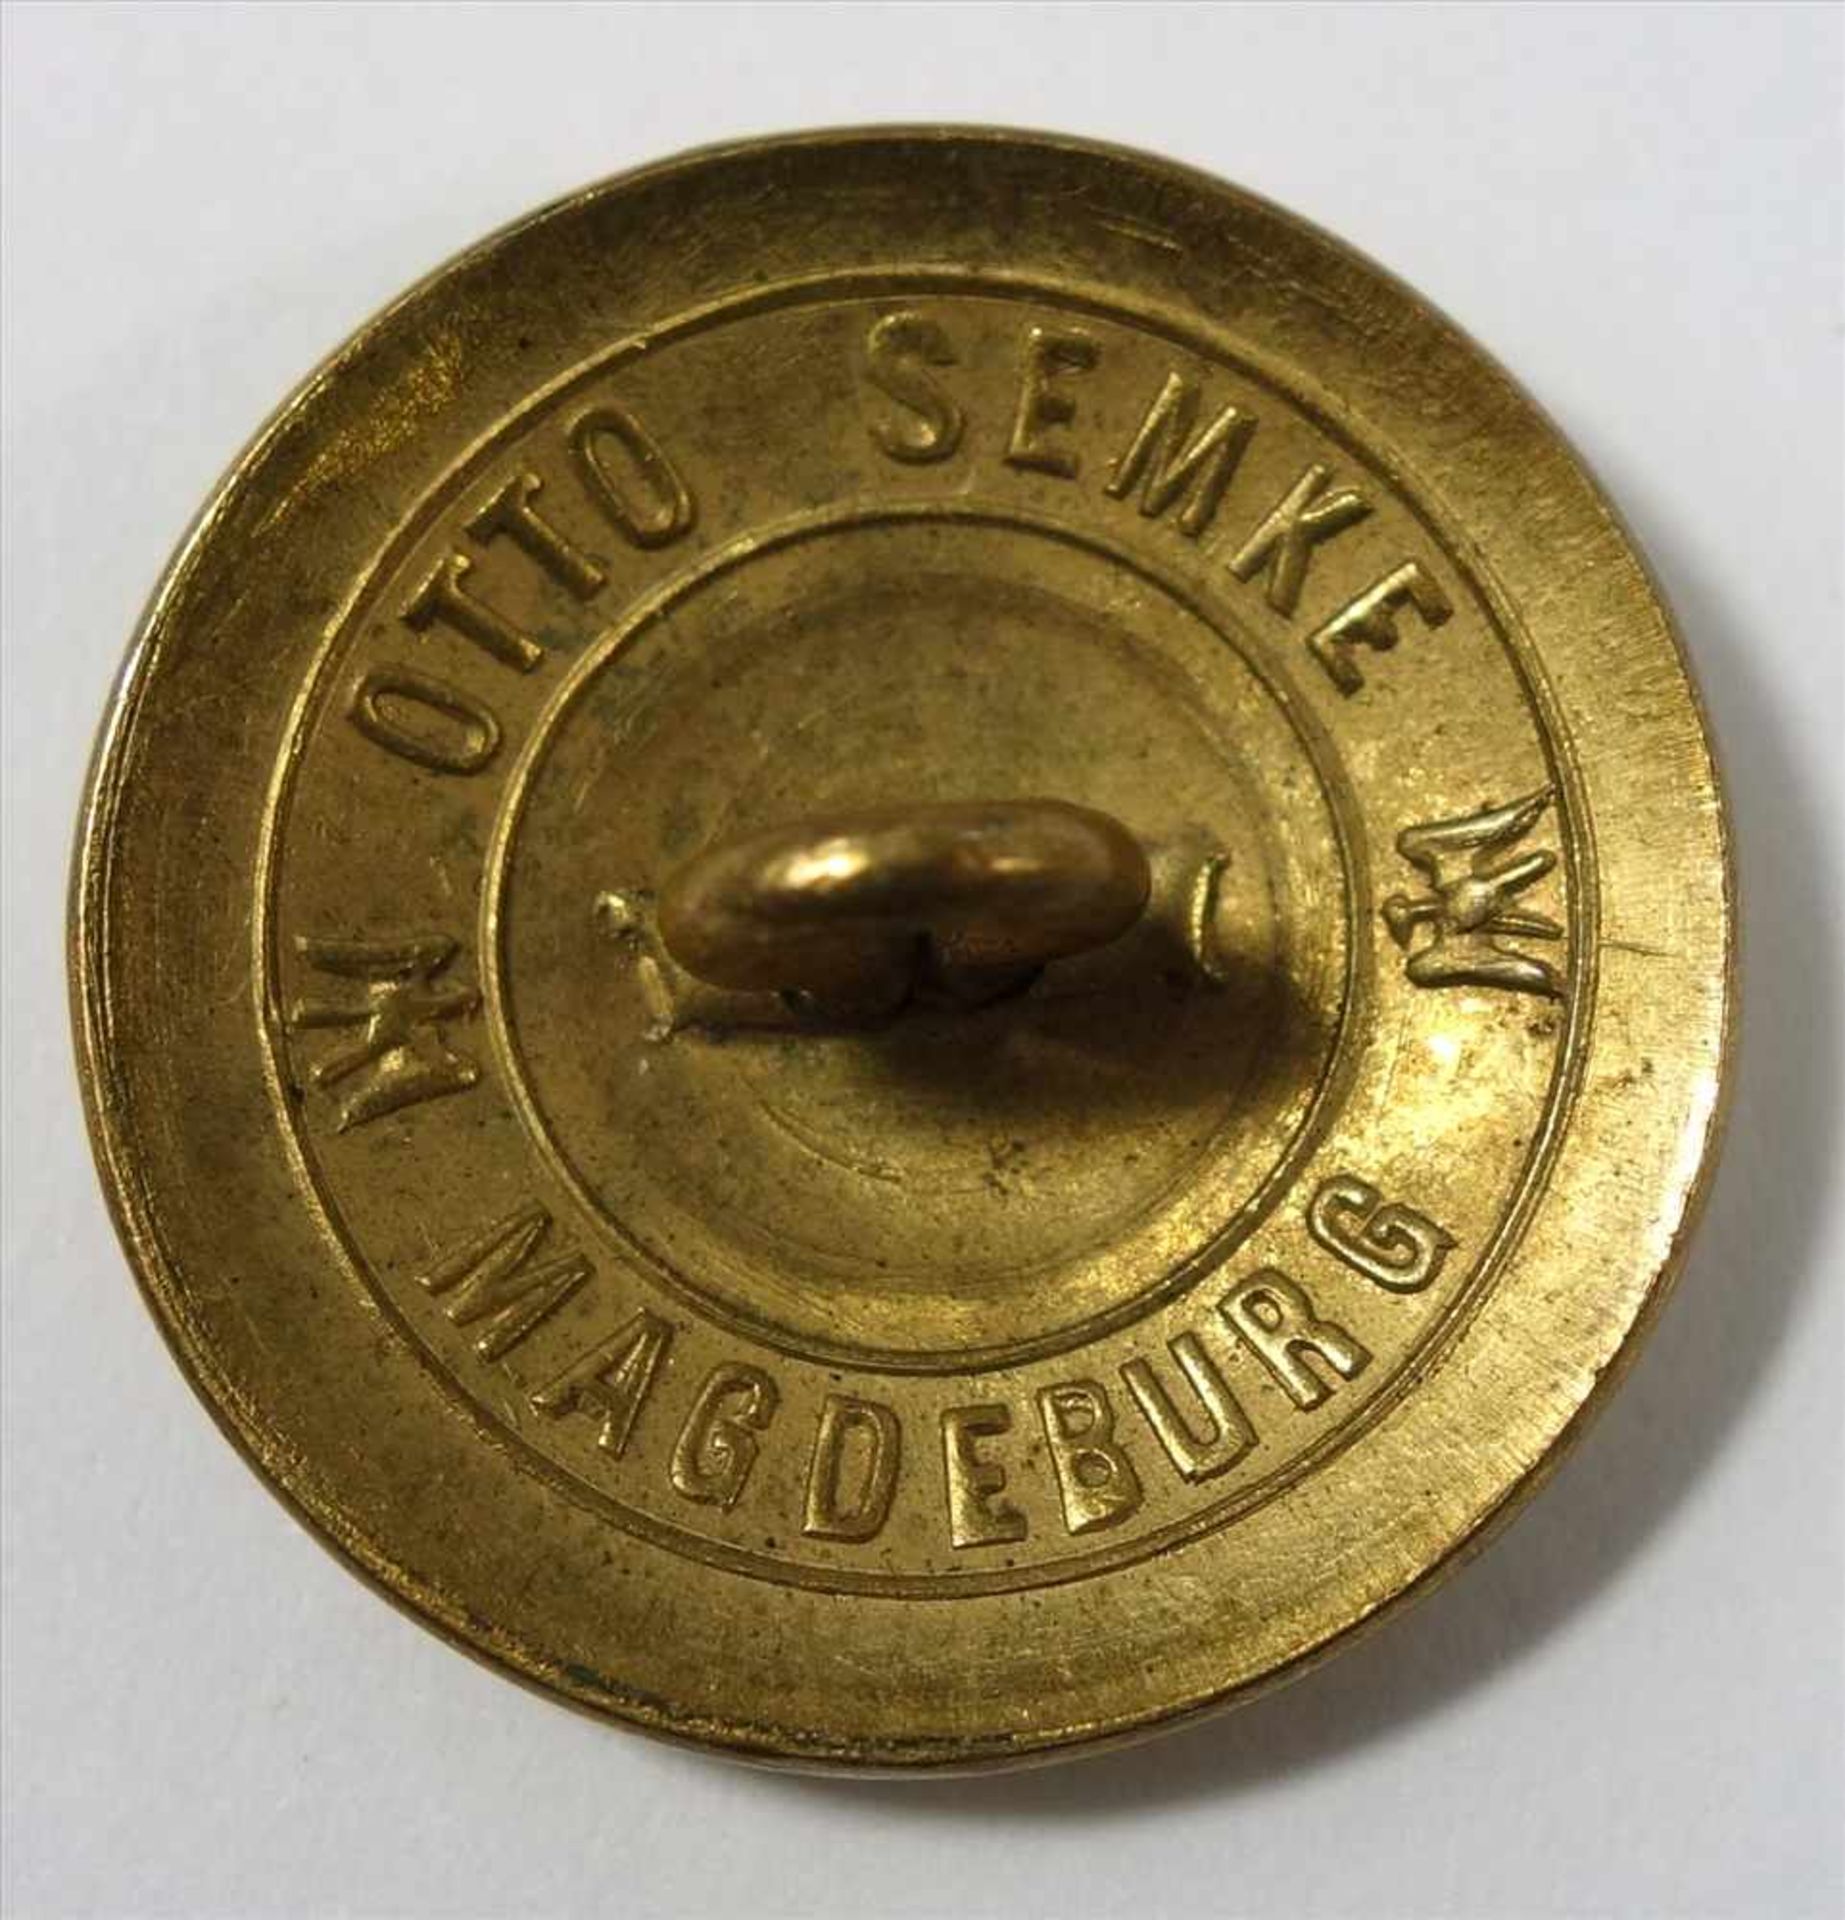 3 Knöpfe, Anfang 20. Jh., davon ein vergoldeter Uniformknopf, Preussen, mit Hoheitsadler, rücks. - Bild 2 aus 2